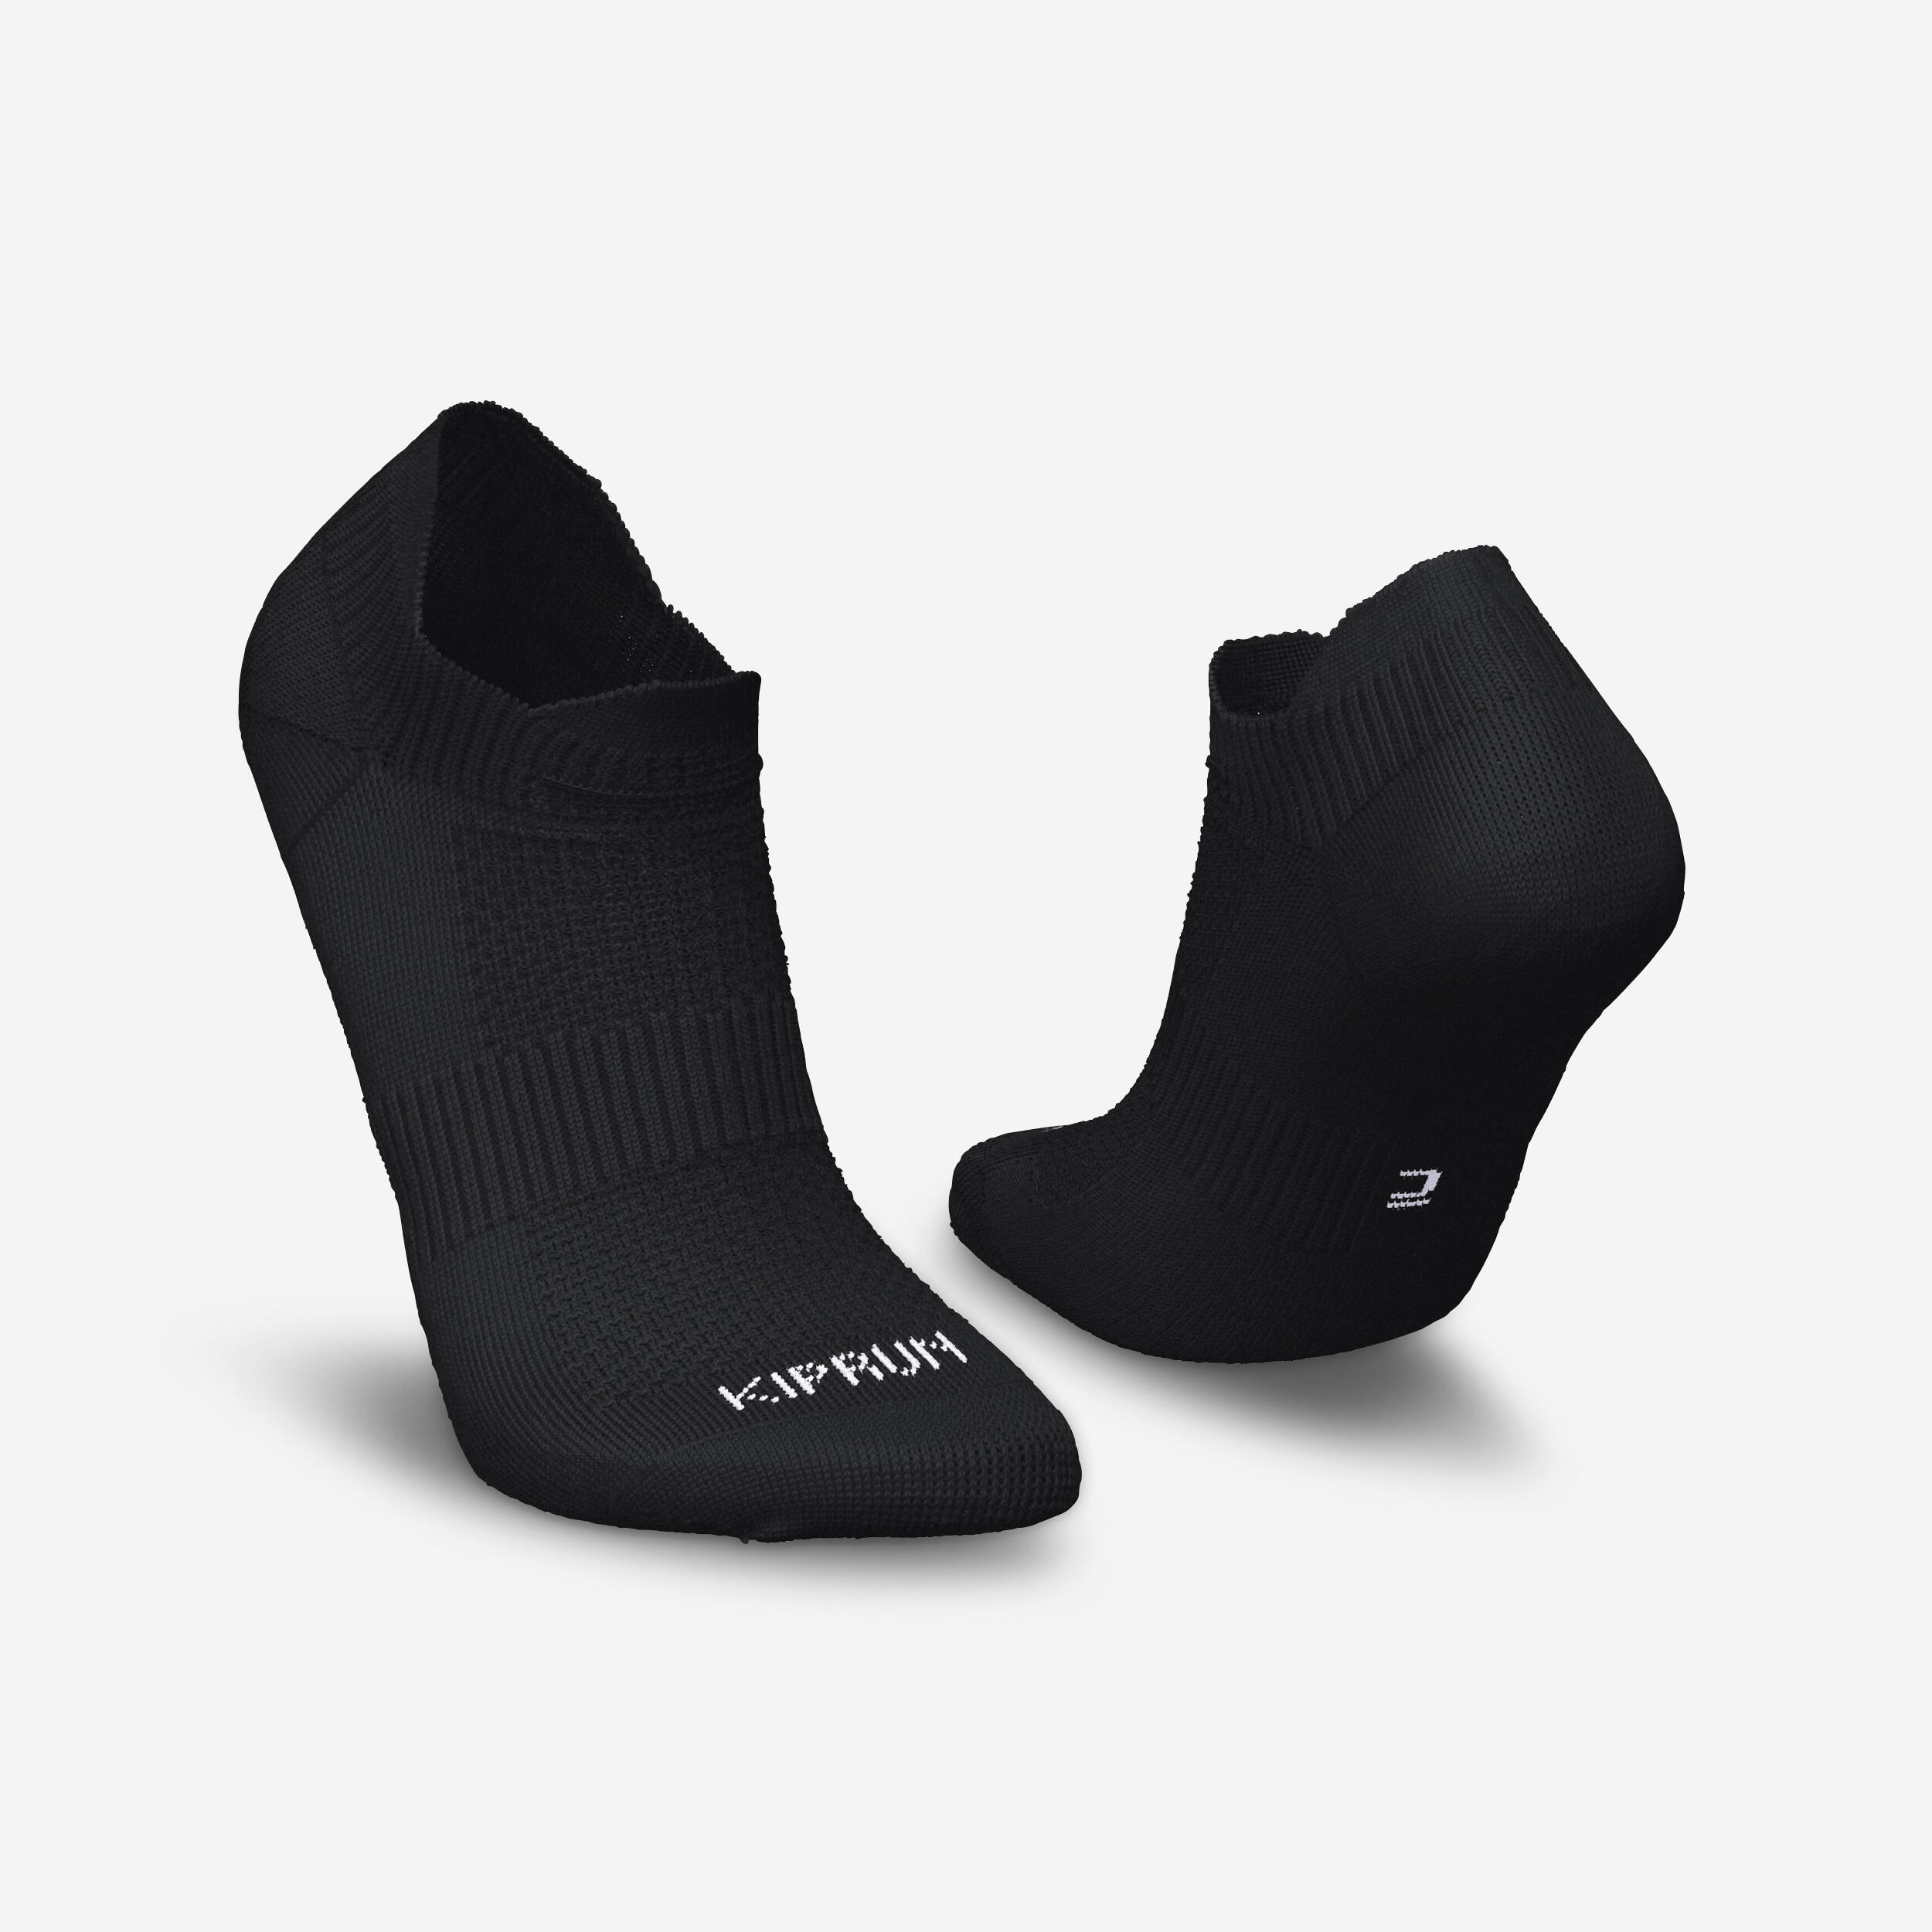 Yoga Non-Slip Toe Socks - Grey